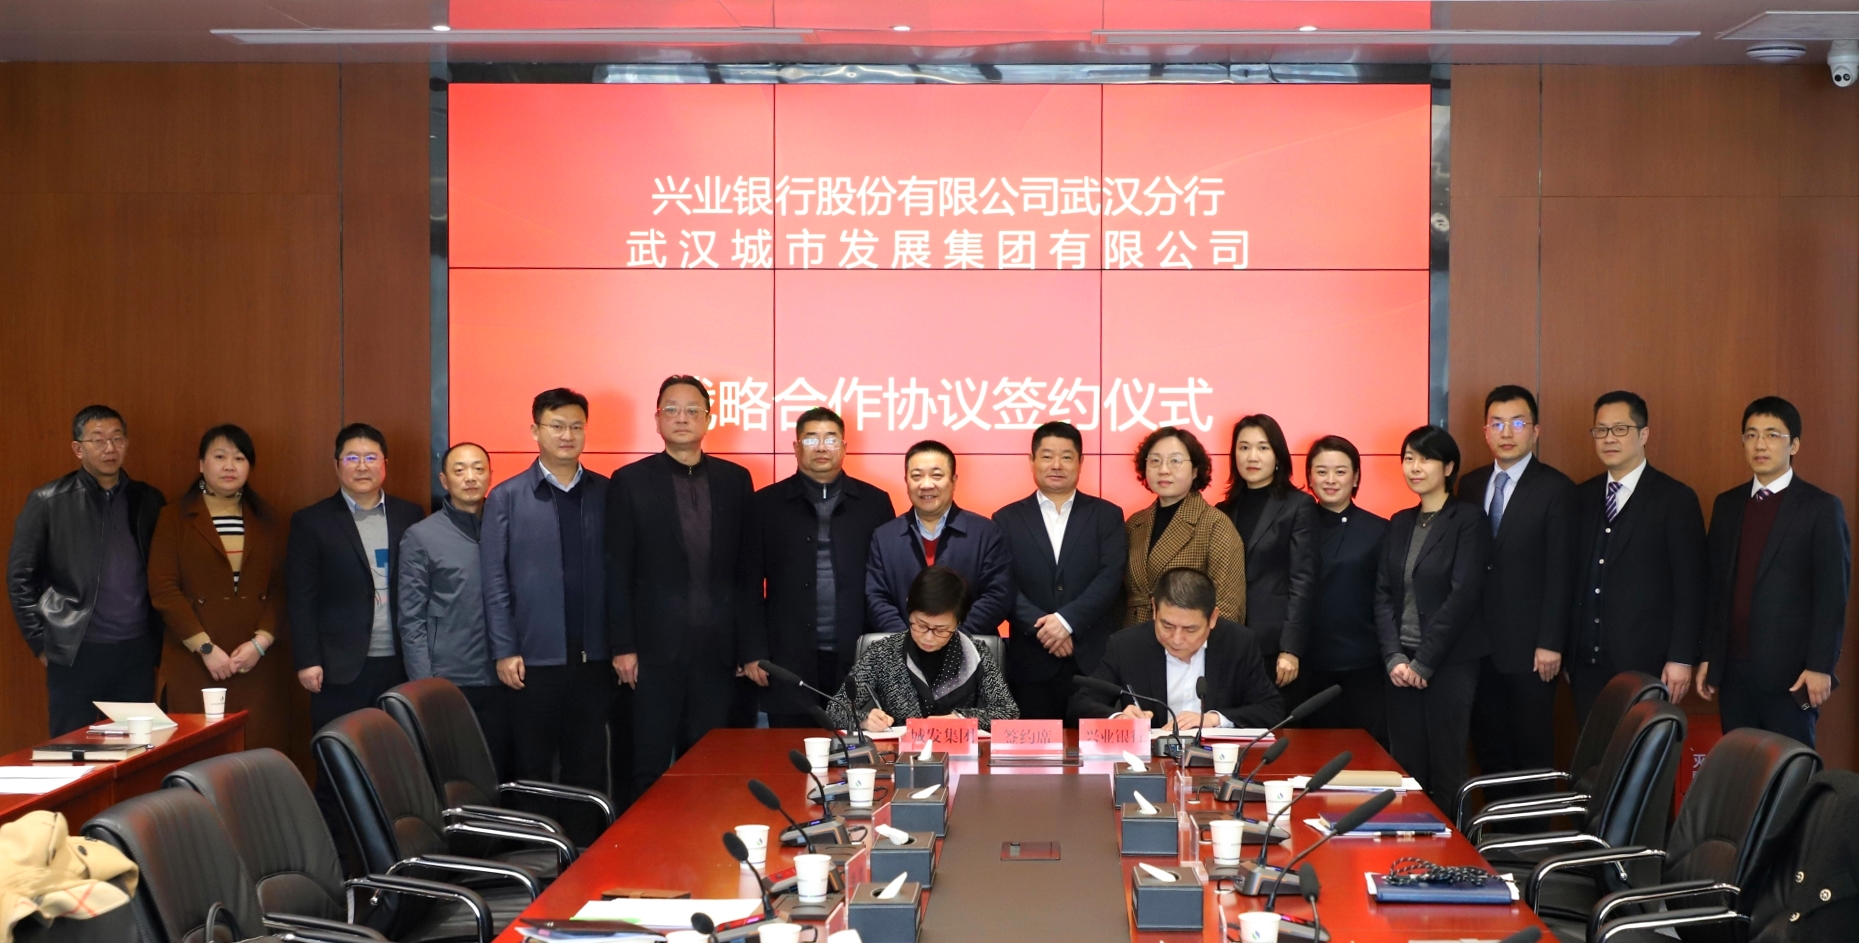 兴业银行武汉分行与武汉城发集团签署 战略合作协议